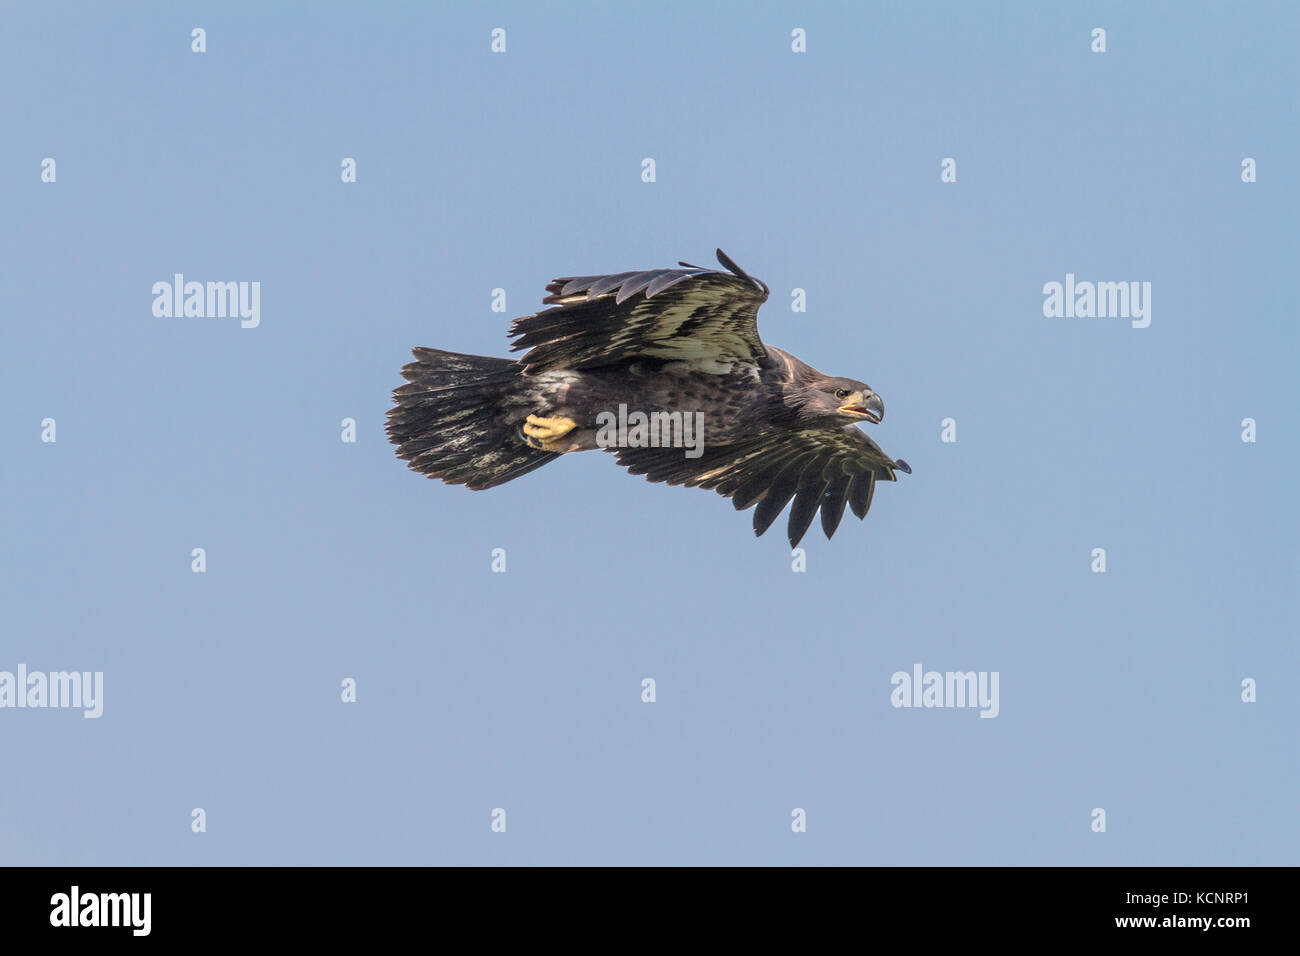 Aquila reale (Aquila chrysaetos) piena apertura alare, come aquila vola in cerca di cibo., Cranbrook, British Columbia, Canada Foto Stock